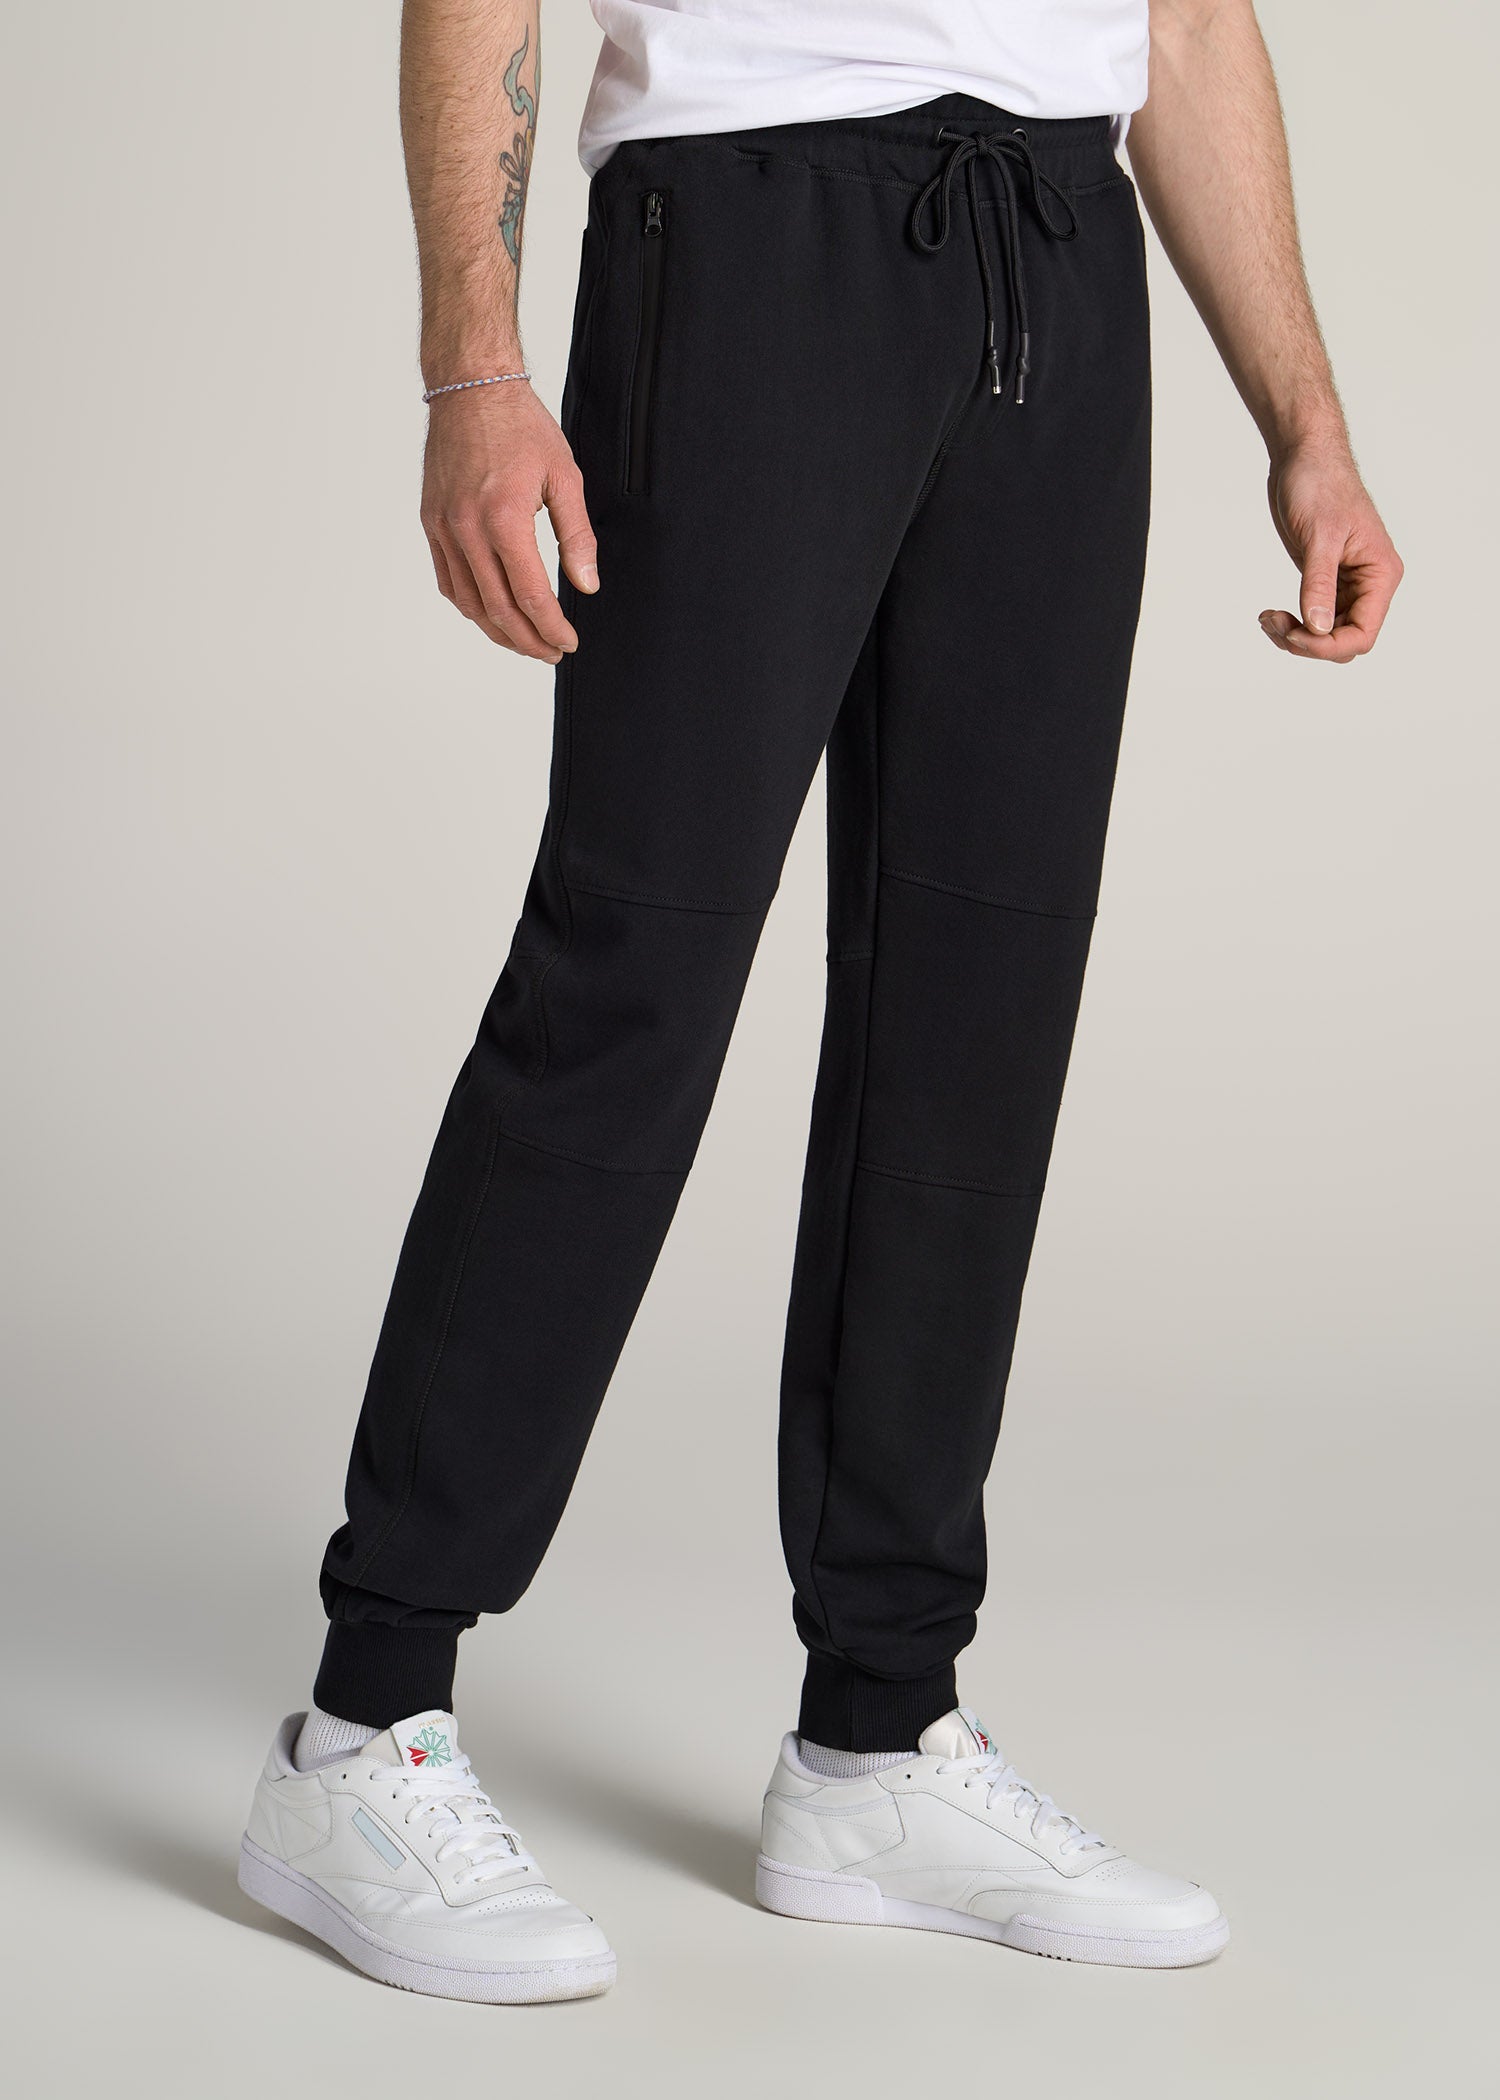 Wearever Fleece Relaxed Women's Tall Sweatpants Black, American Tall